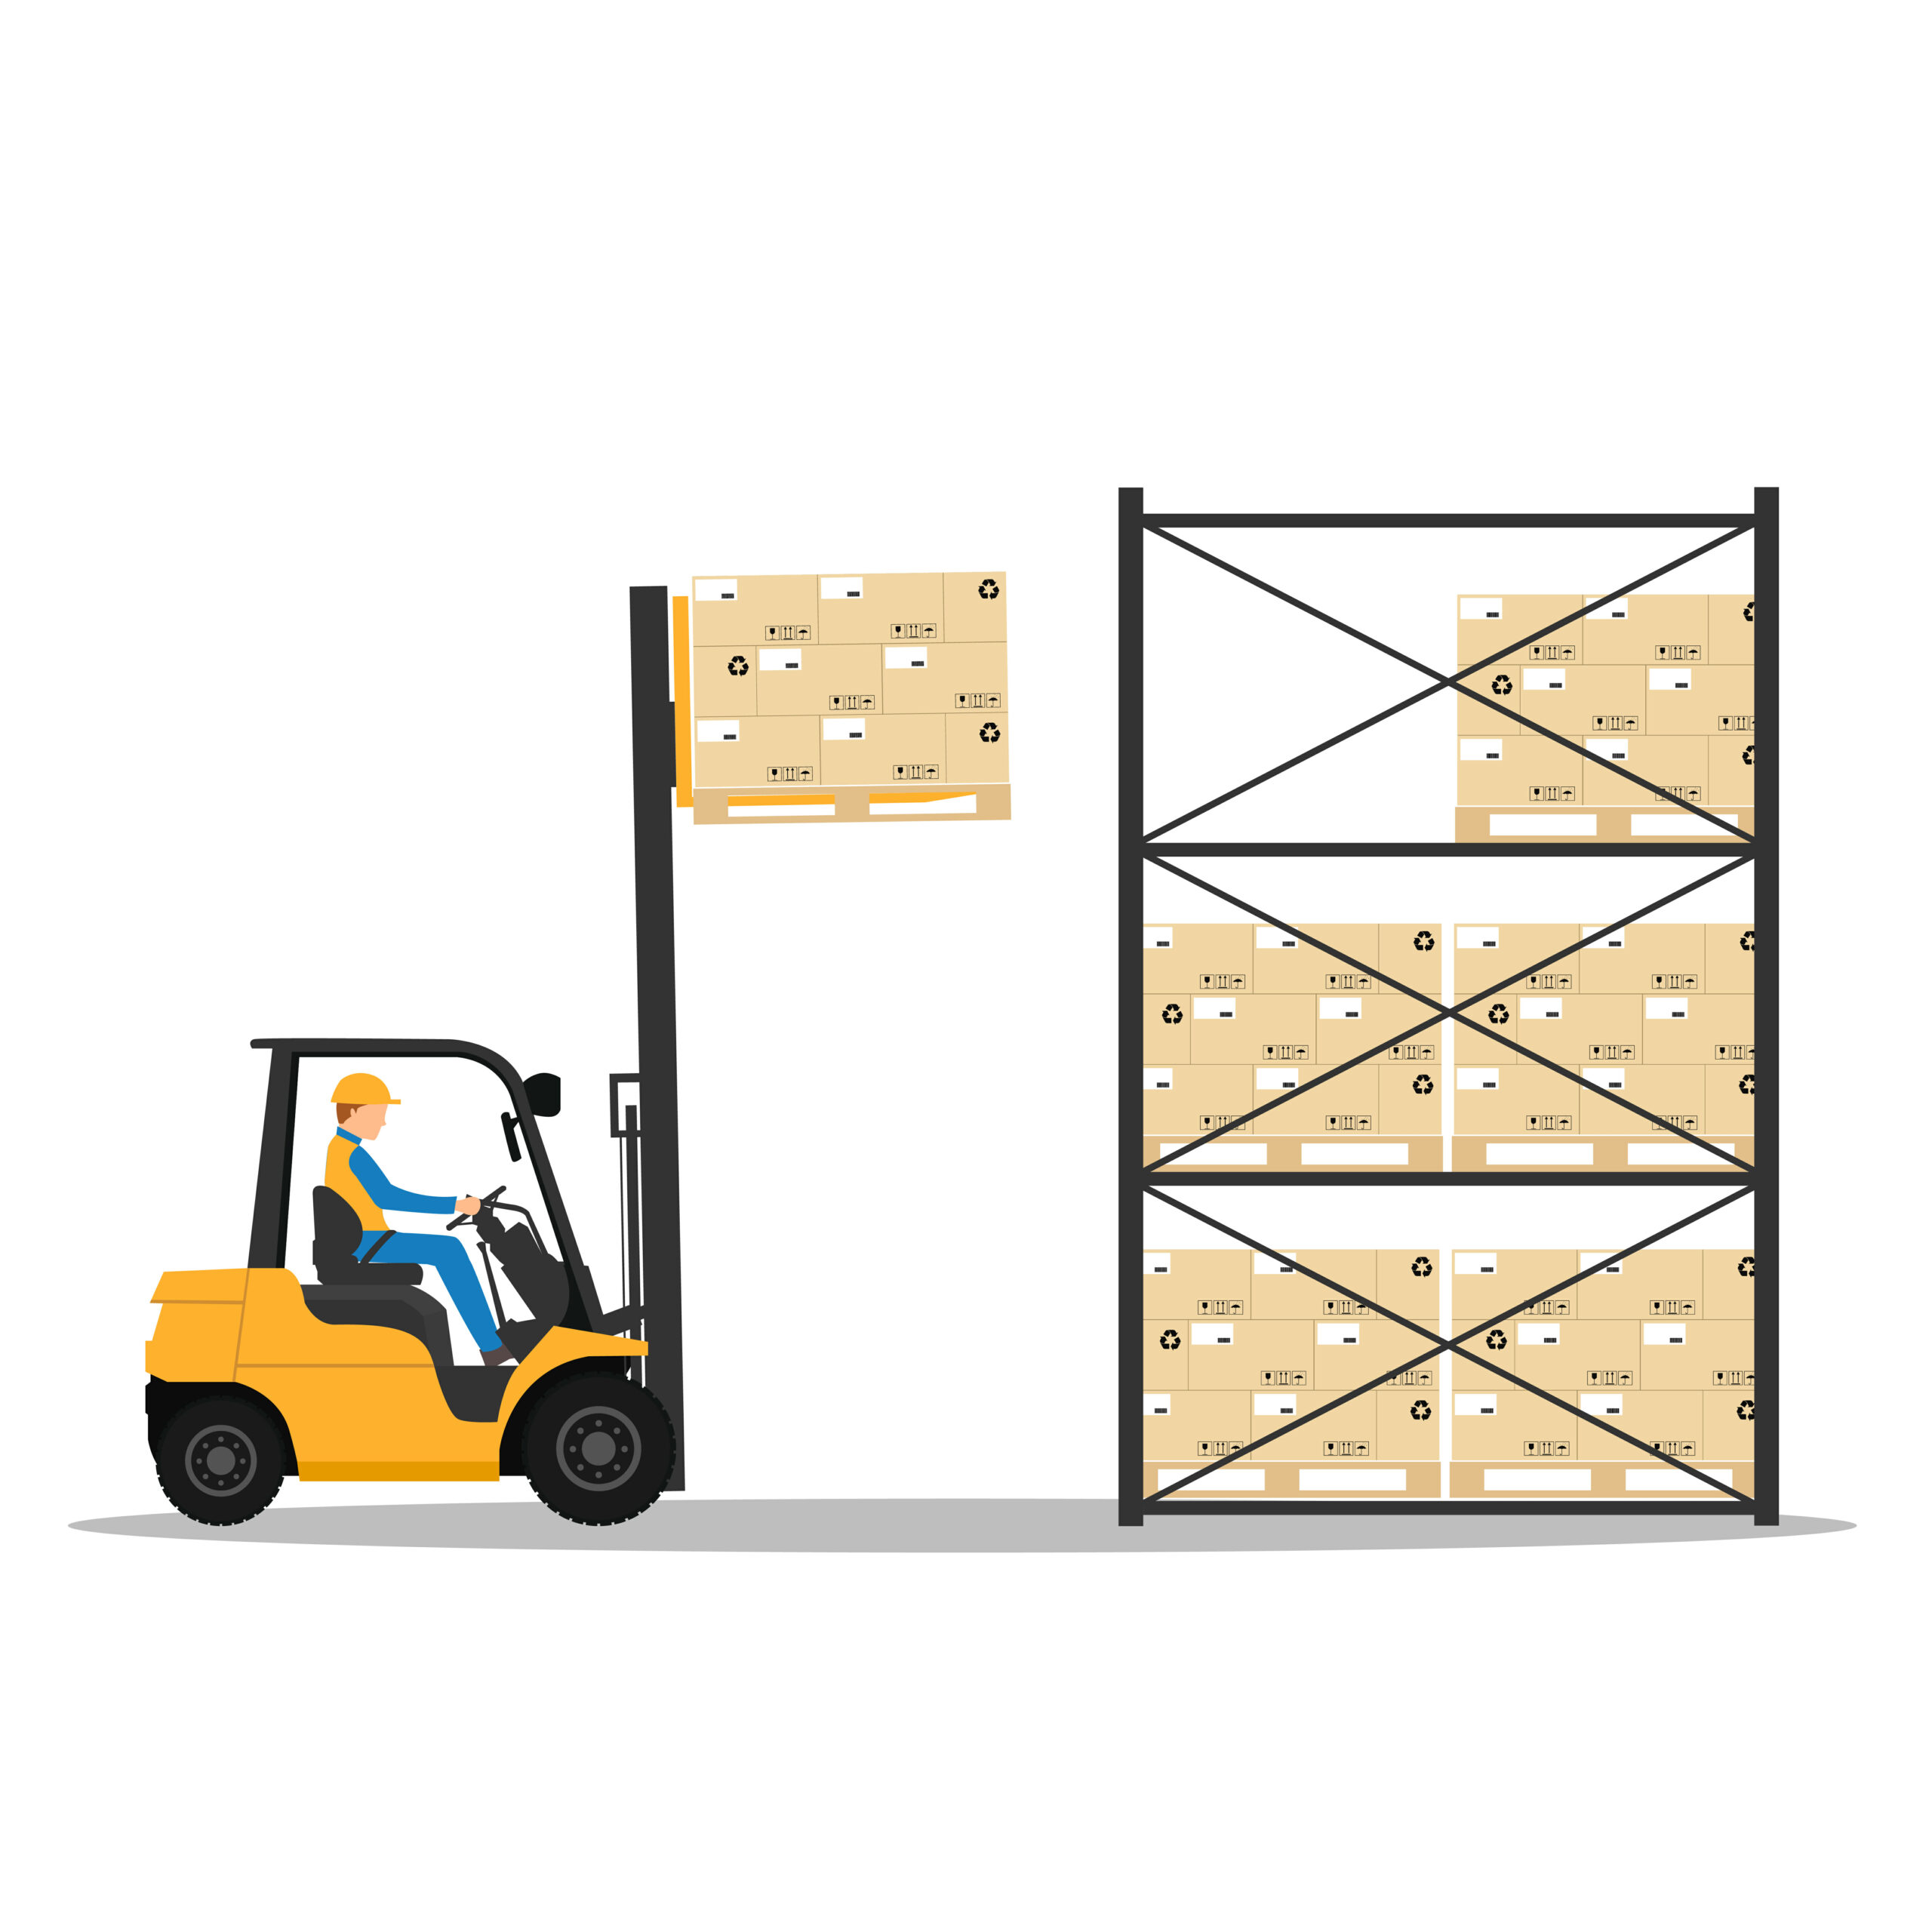 Evitar problemas de calidad durante el transporte y almacenamiento de la mercancía.